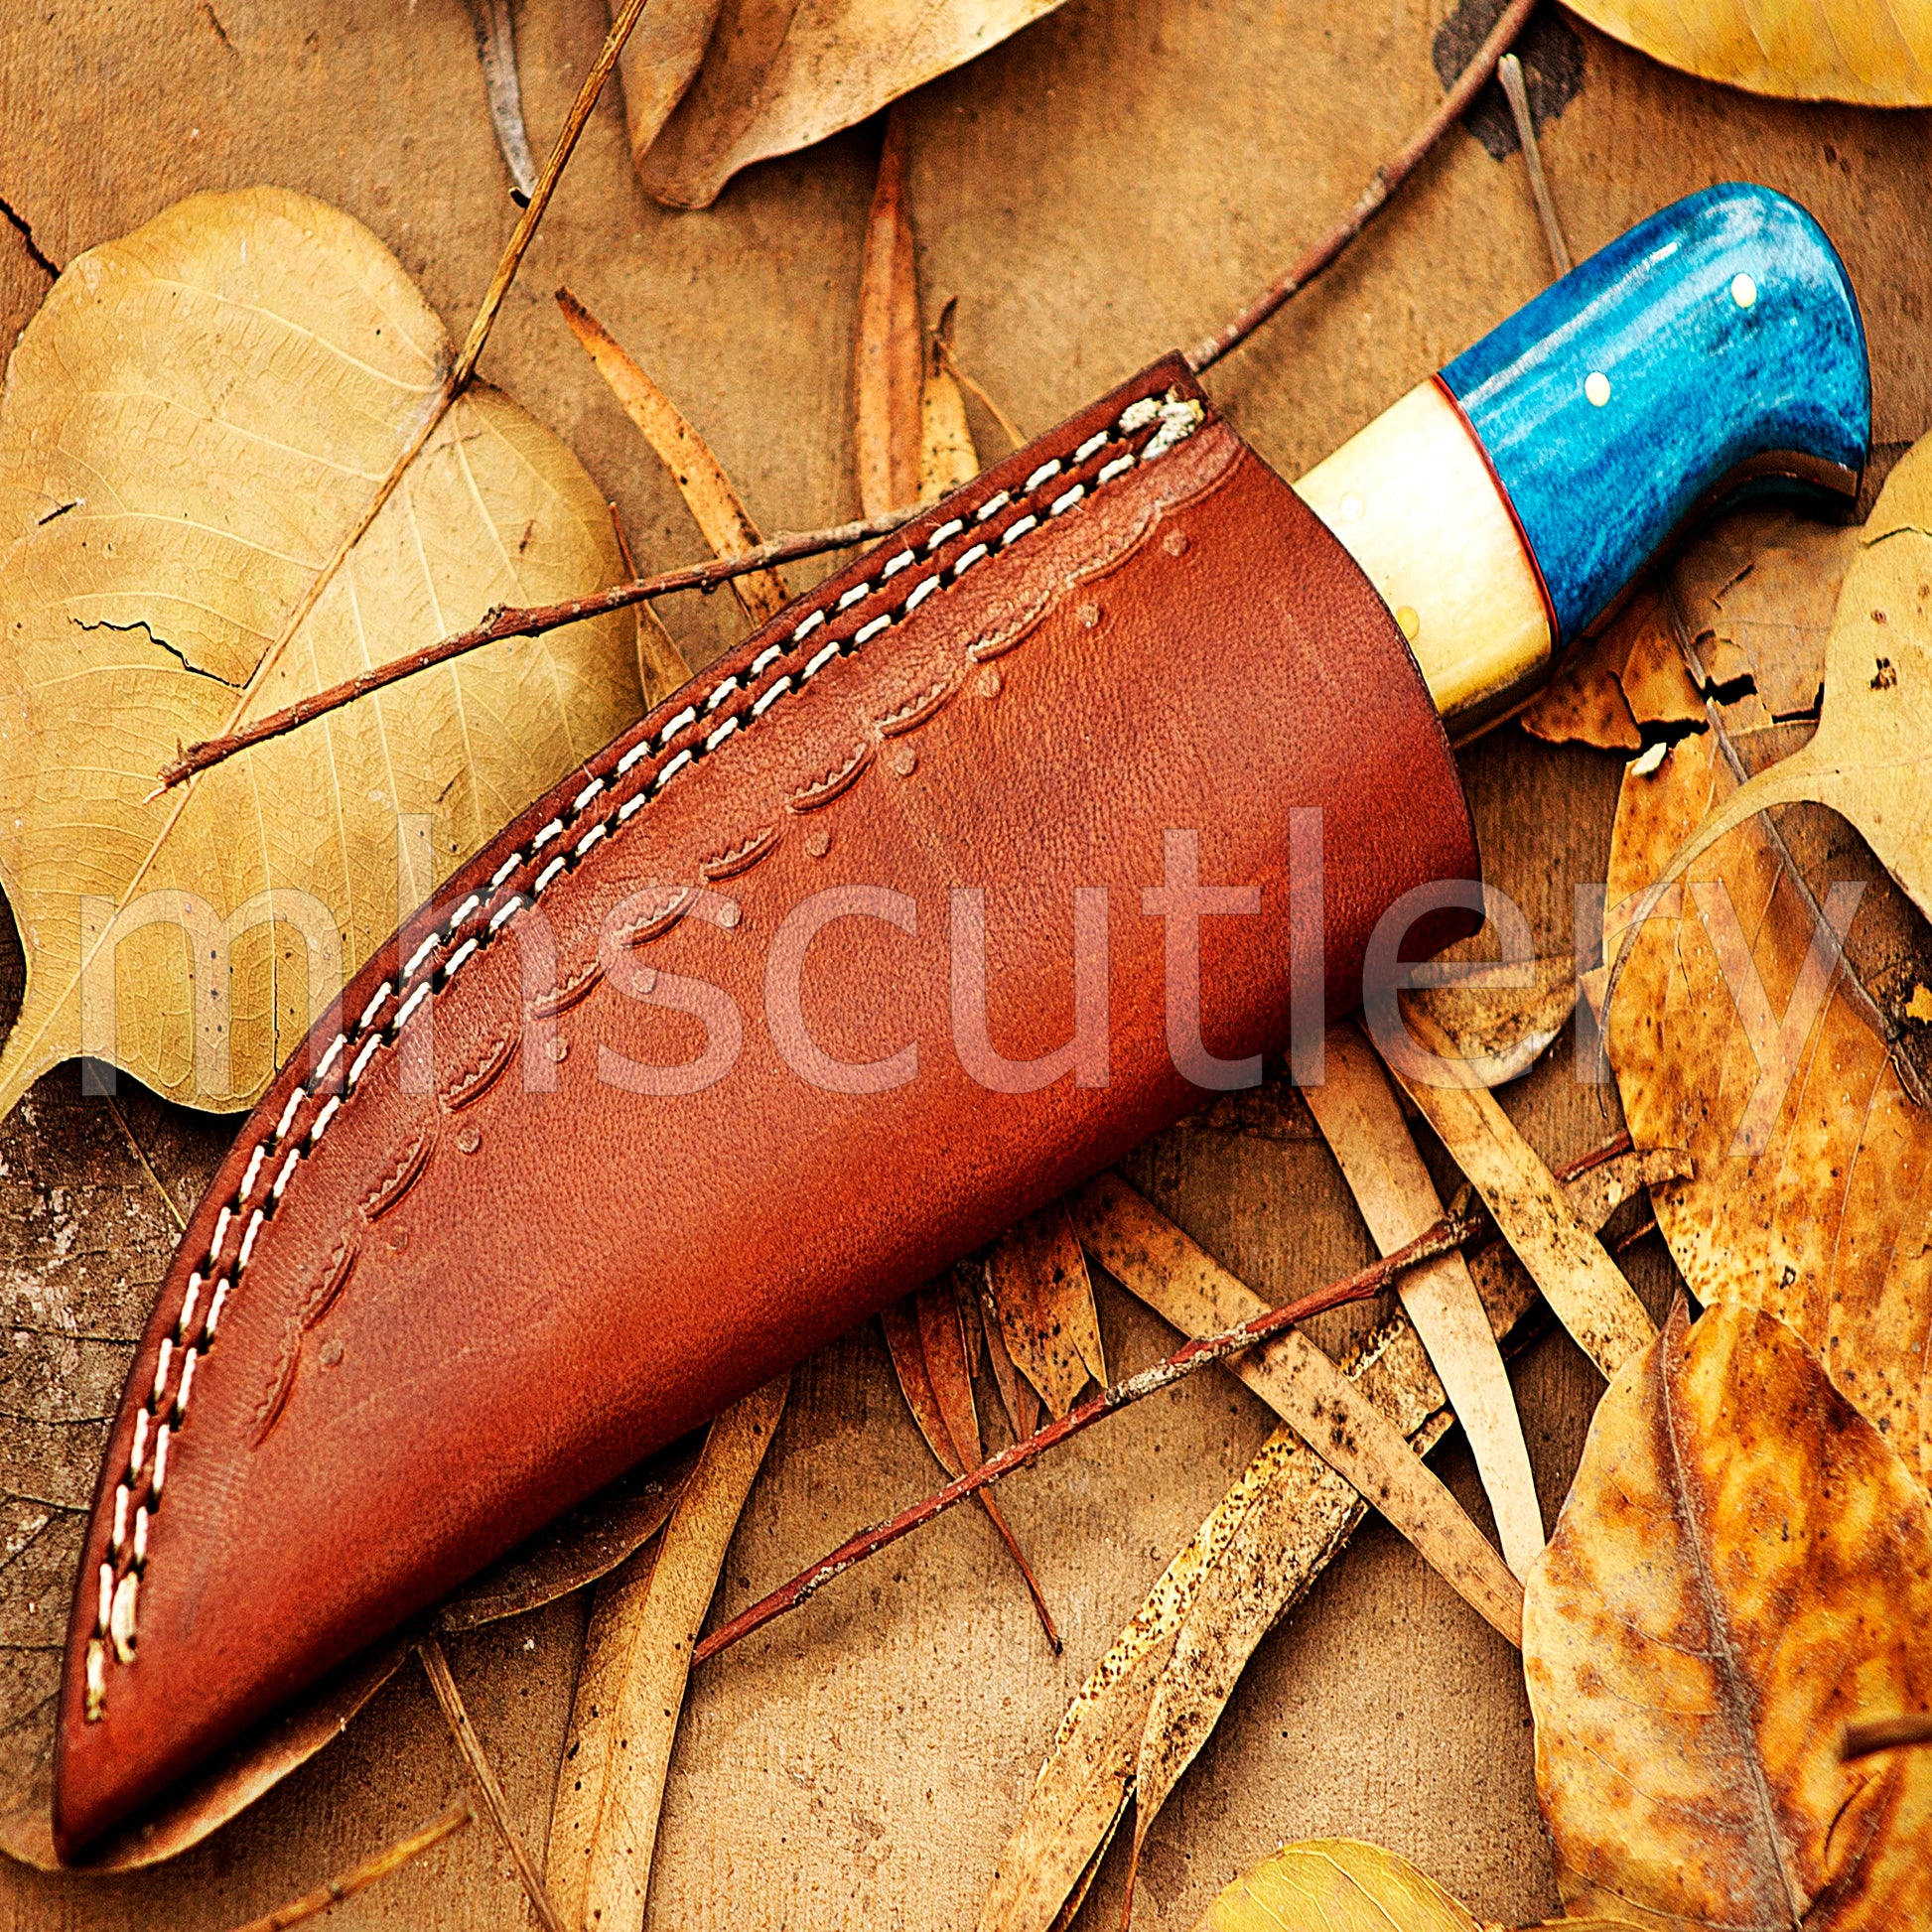 Custom Handmade Damascus Steel Fixed Blade Skinner Knife | mhscutlery